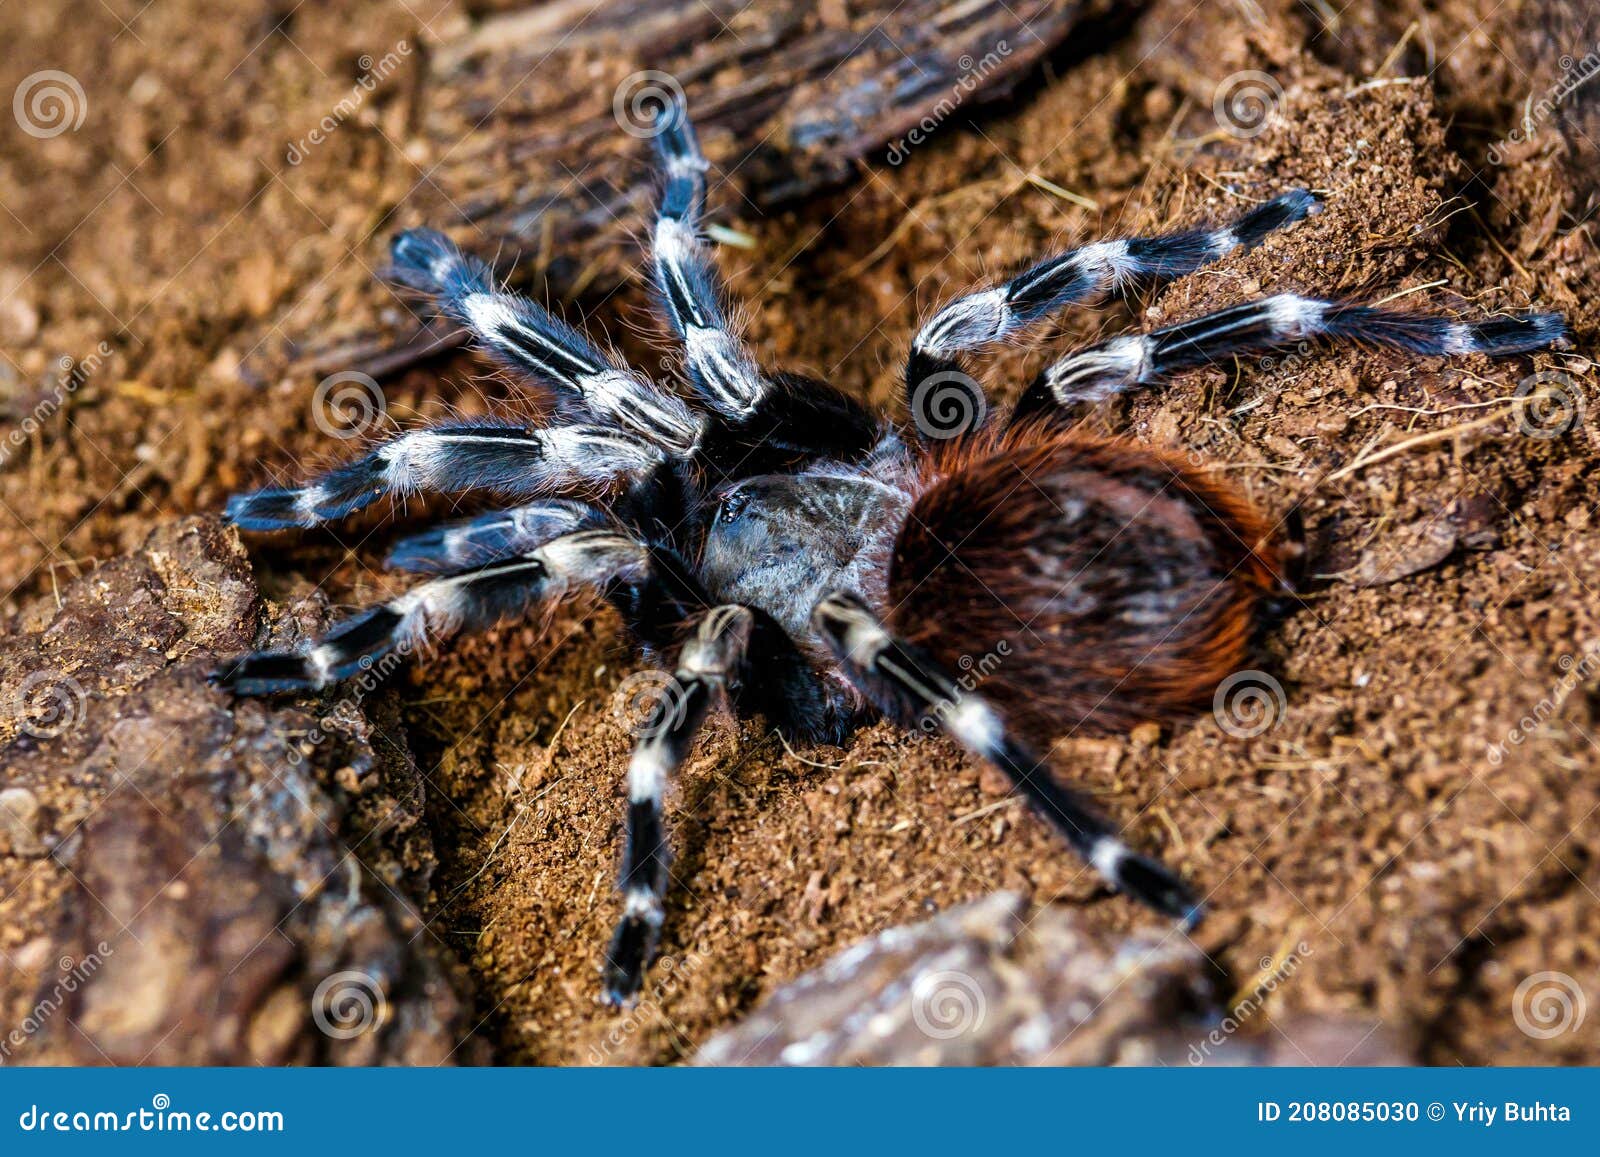 Een Grote Spin Heeft De Costa Rican Tarantula De Grootste Tarantula Ter ...